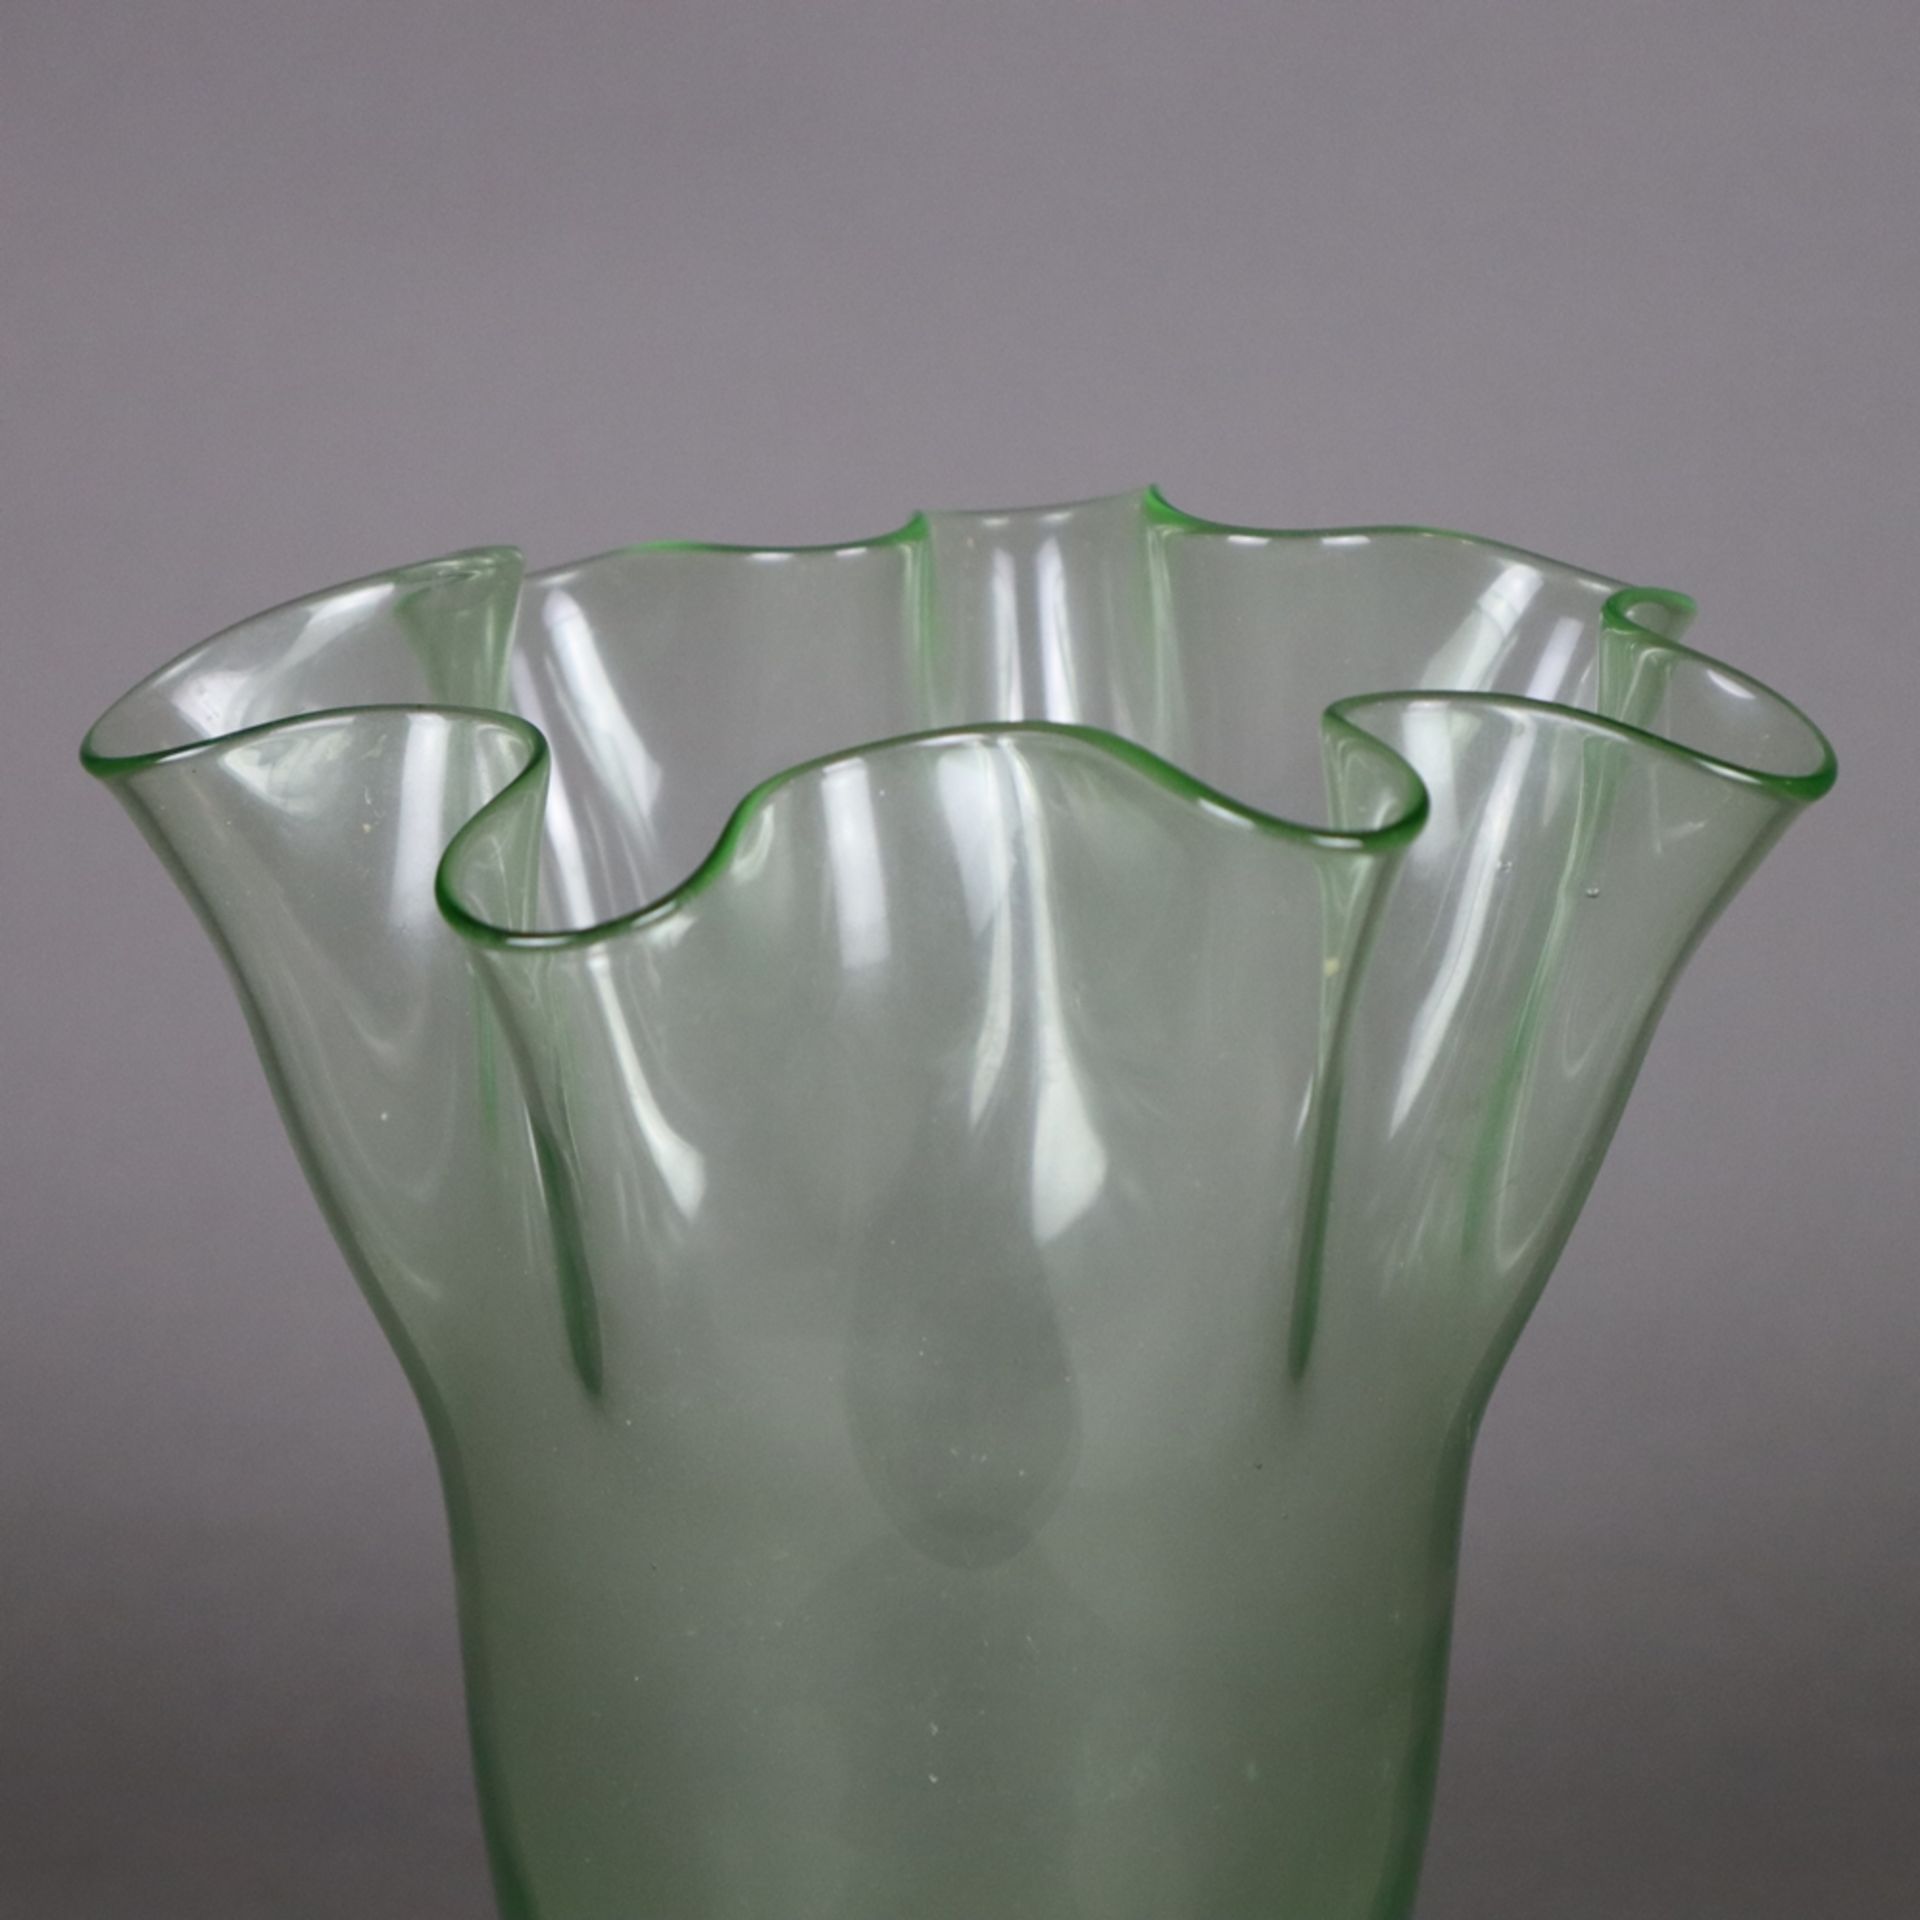 Ziervase in "Fazzoletto"- Form - Taschentuchvase, grünes Glas, mehrfach gefaltete Wandung, Boden - Bild 2 aus 7